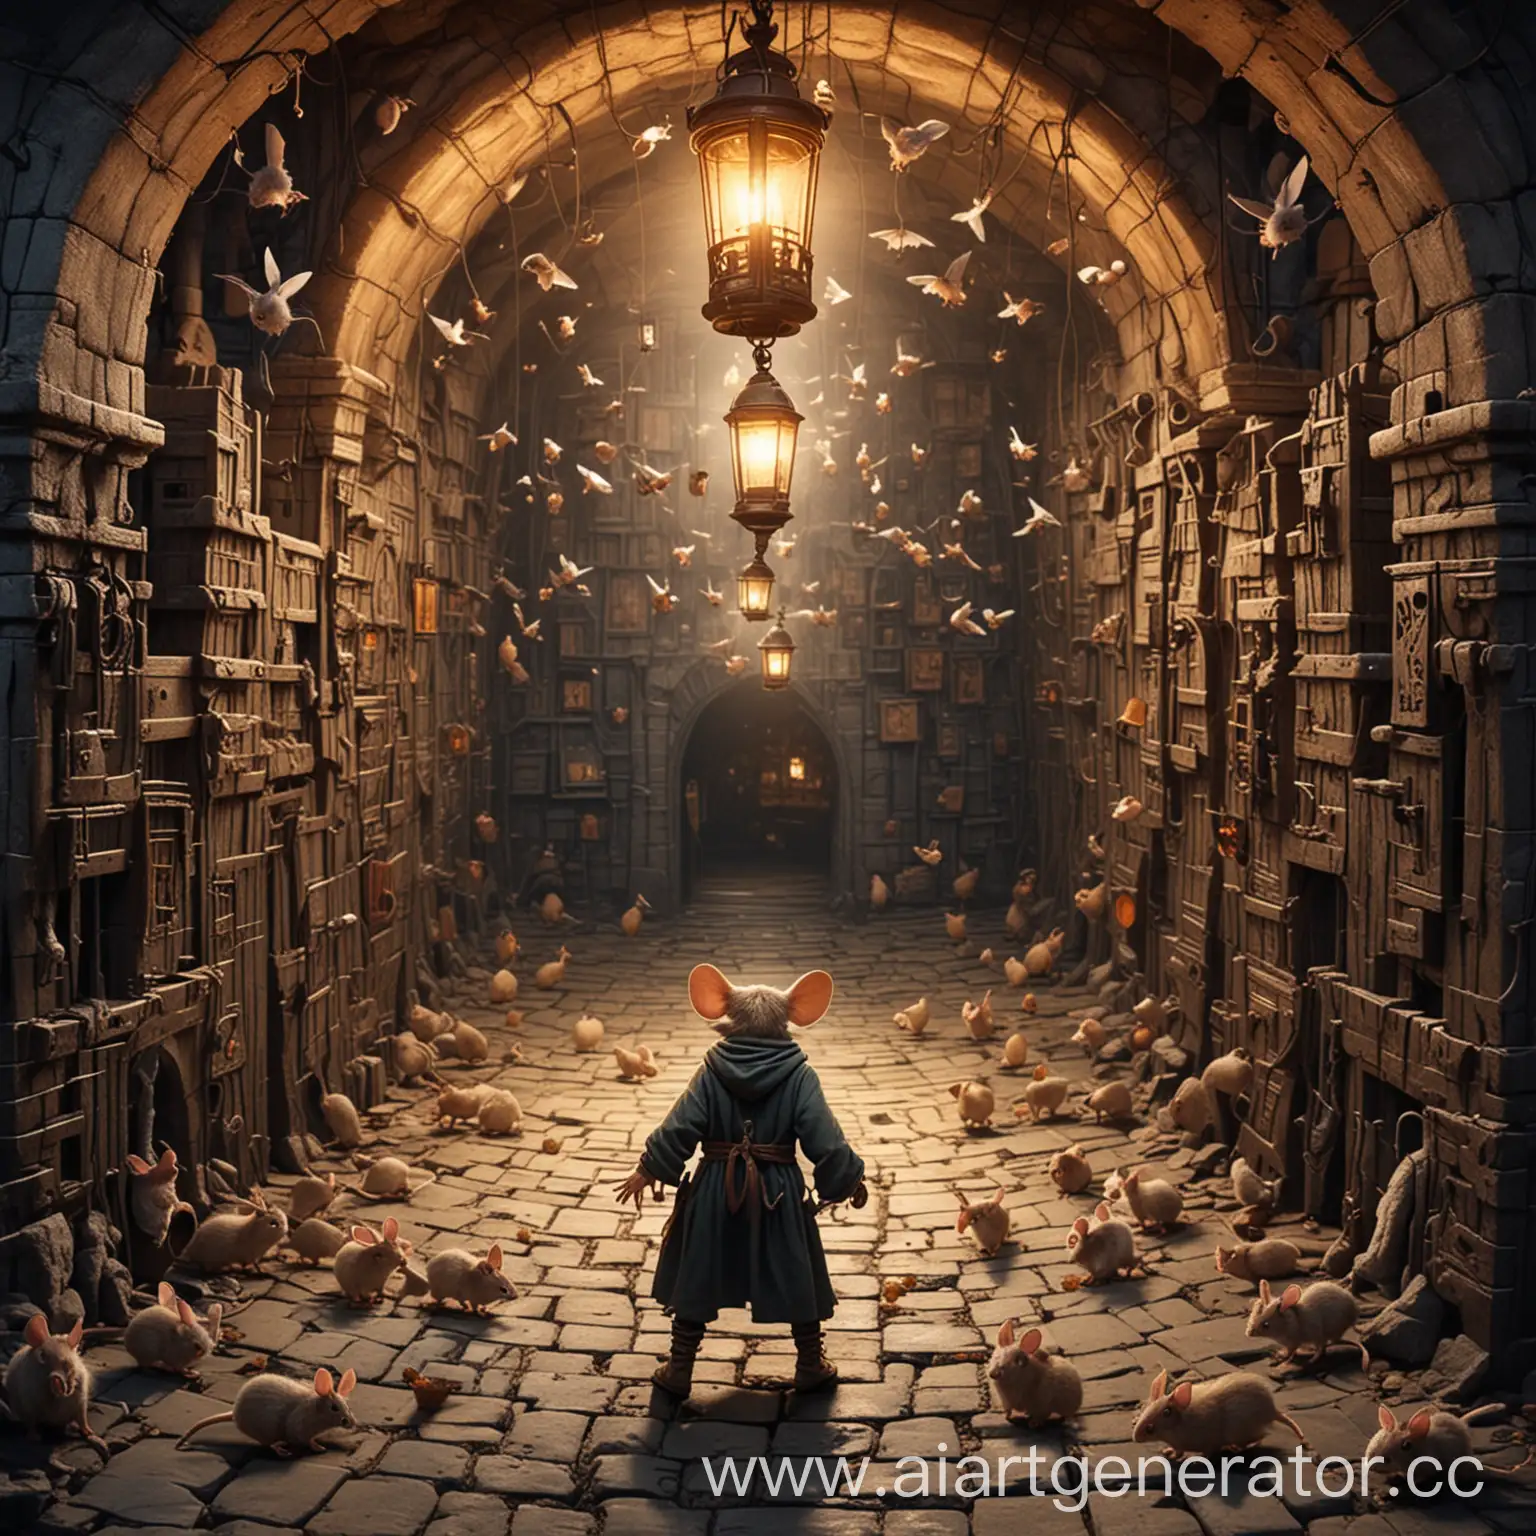 Лабиринт-подземелье с летучими мышами и один человек в нём с факелом в руках